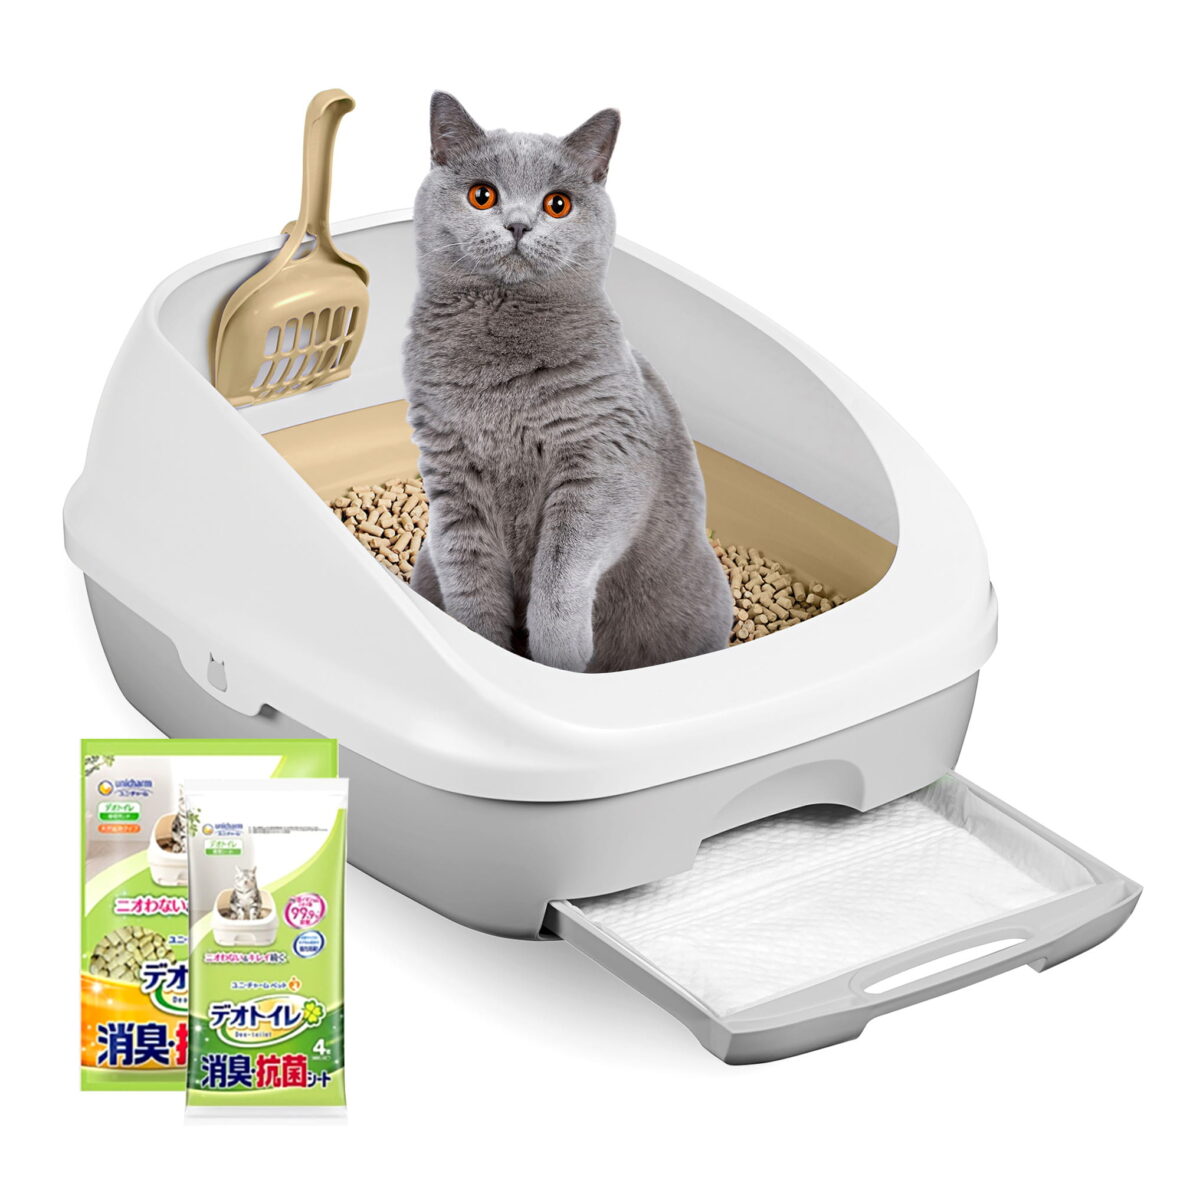 Классический двухуровневый кошачий туалет (комплект: лоток + гранулы 1,6 кг + 4 пеленки) Оригинальная версия Tidy Cats Breeze cat litter box из Японии (Японский кошачий туалет)